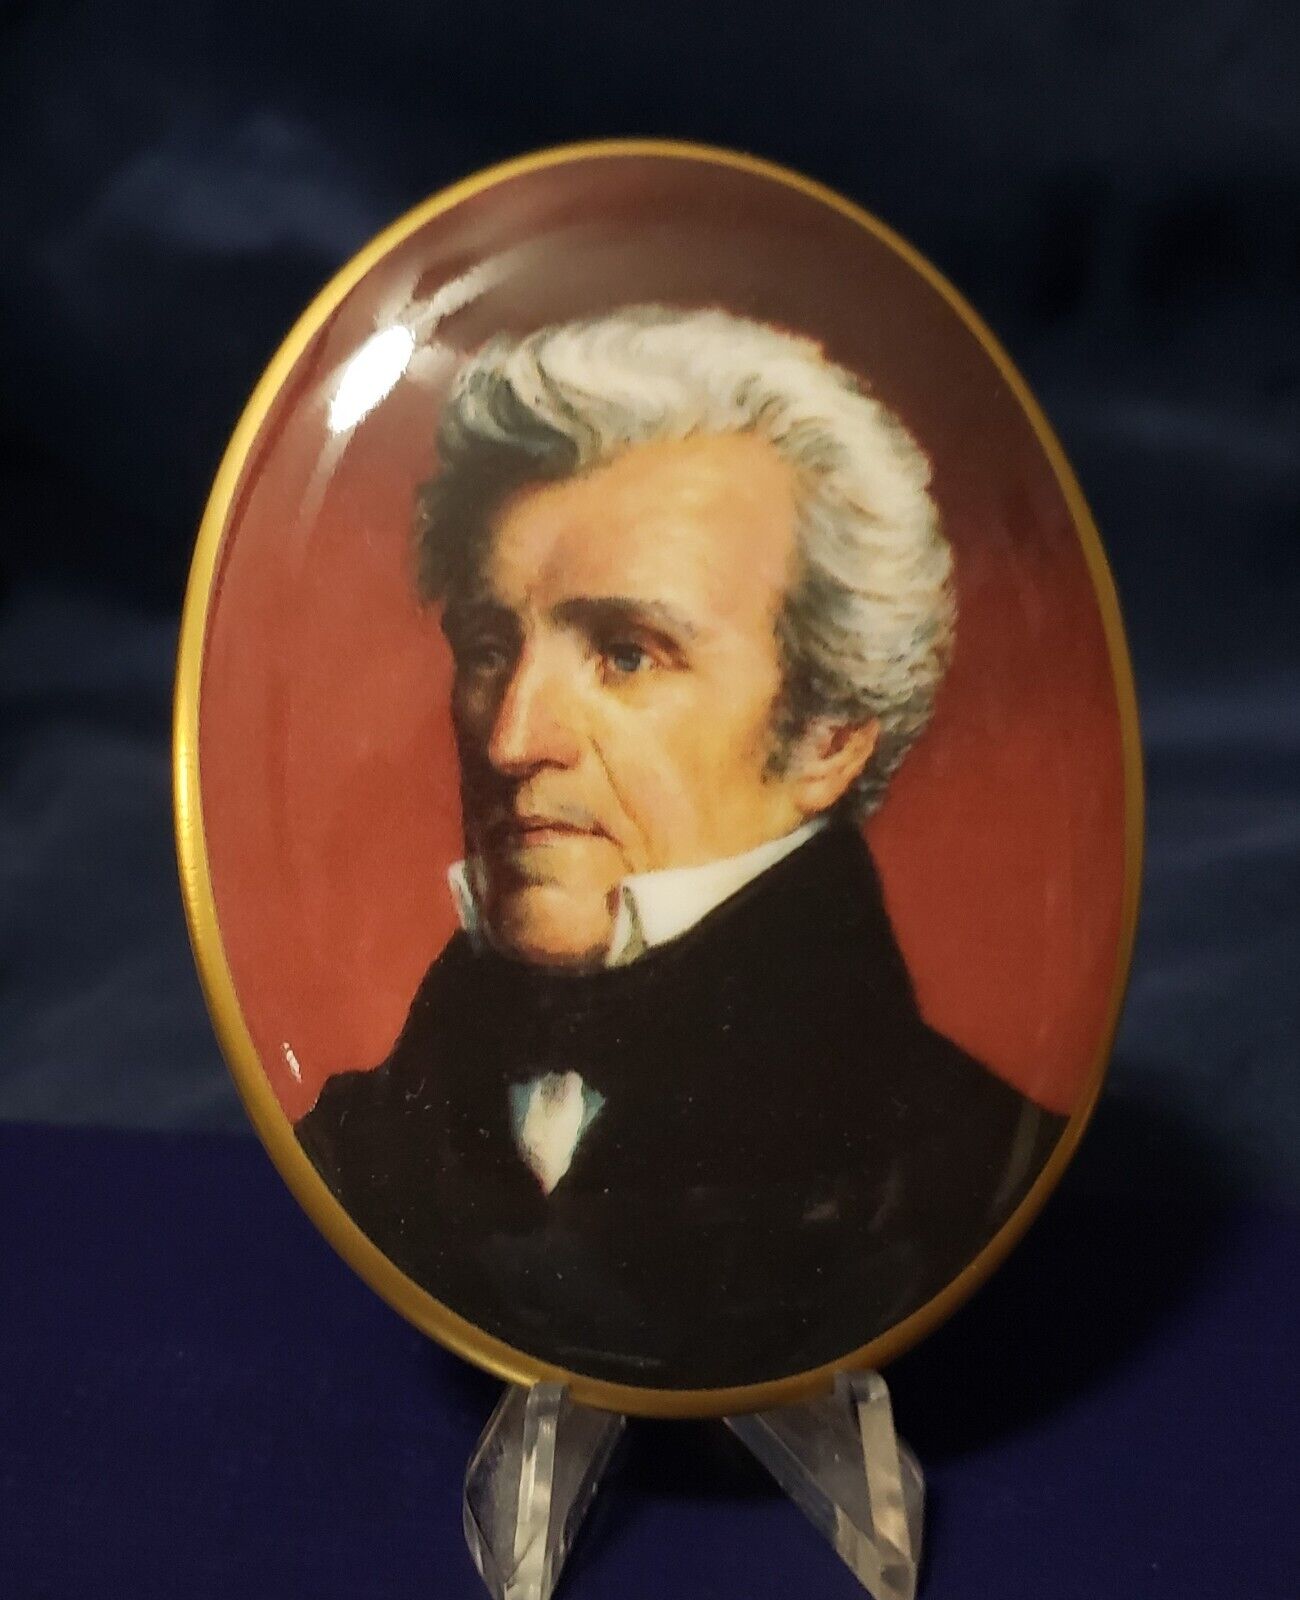 Andrew Jackson presidential portrait porcelain medallion